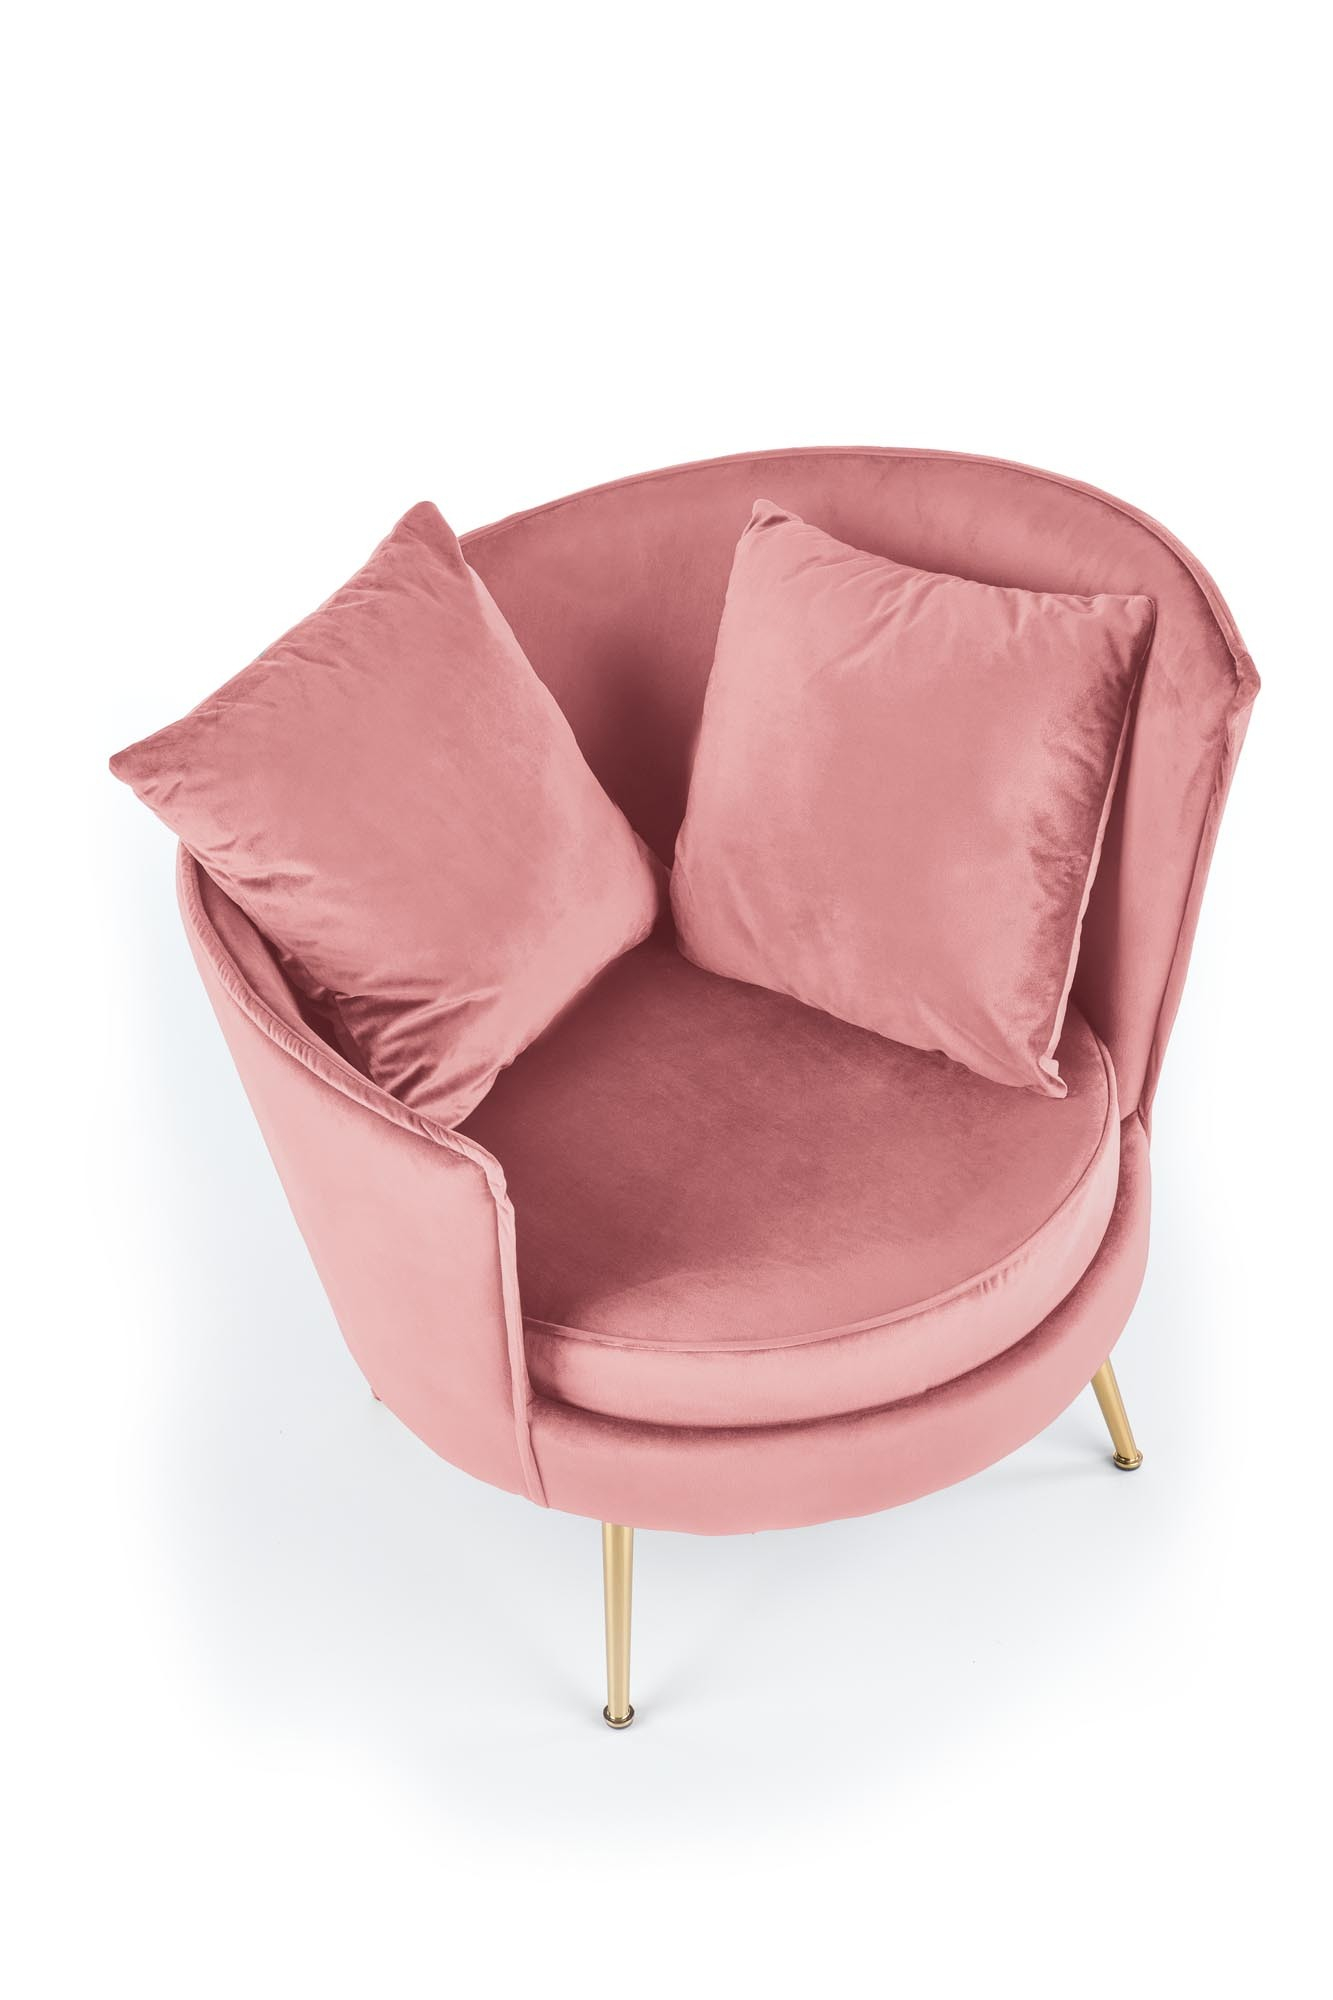 ALMOND fotel wypoczynkowy różowy